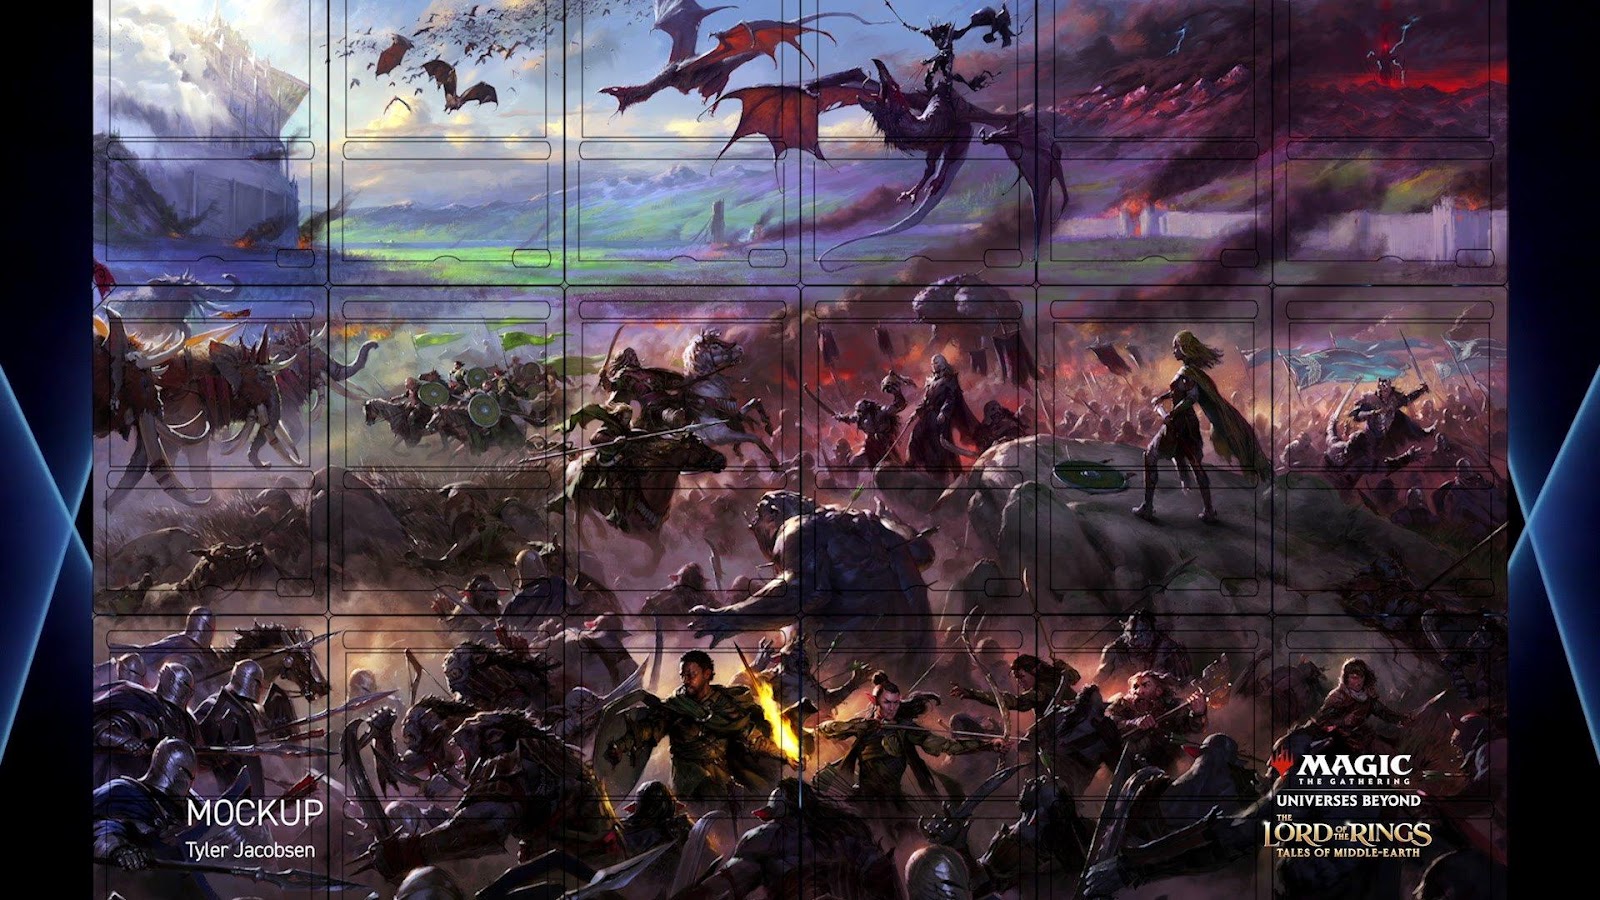 C:UsersJosef JanákDesktopMagicStředeční VýhledyStředeční Výhledy 16Wizards PresentsThe Lord of the Rings - Tales of Middle-earth.jpg